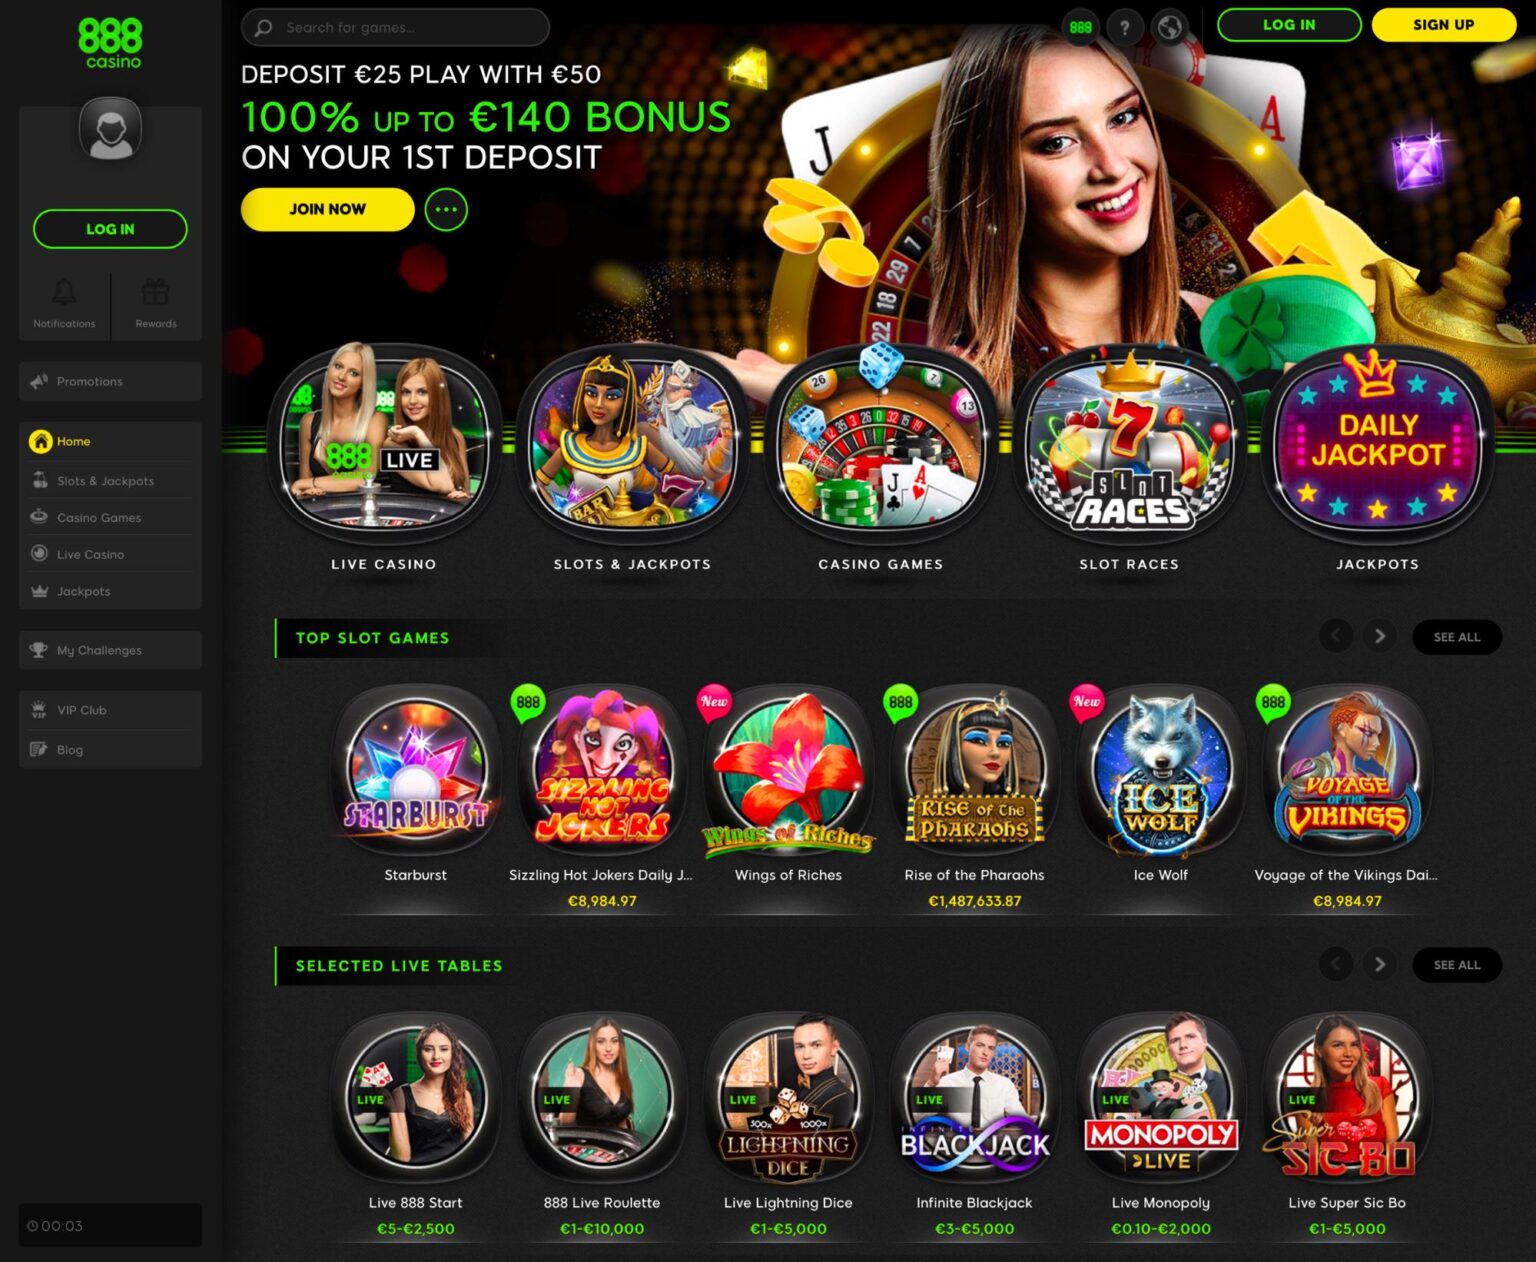 888 официальный сайт казино рin up casino